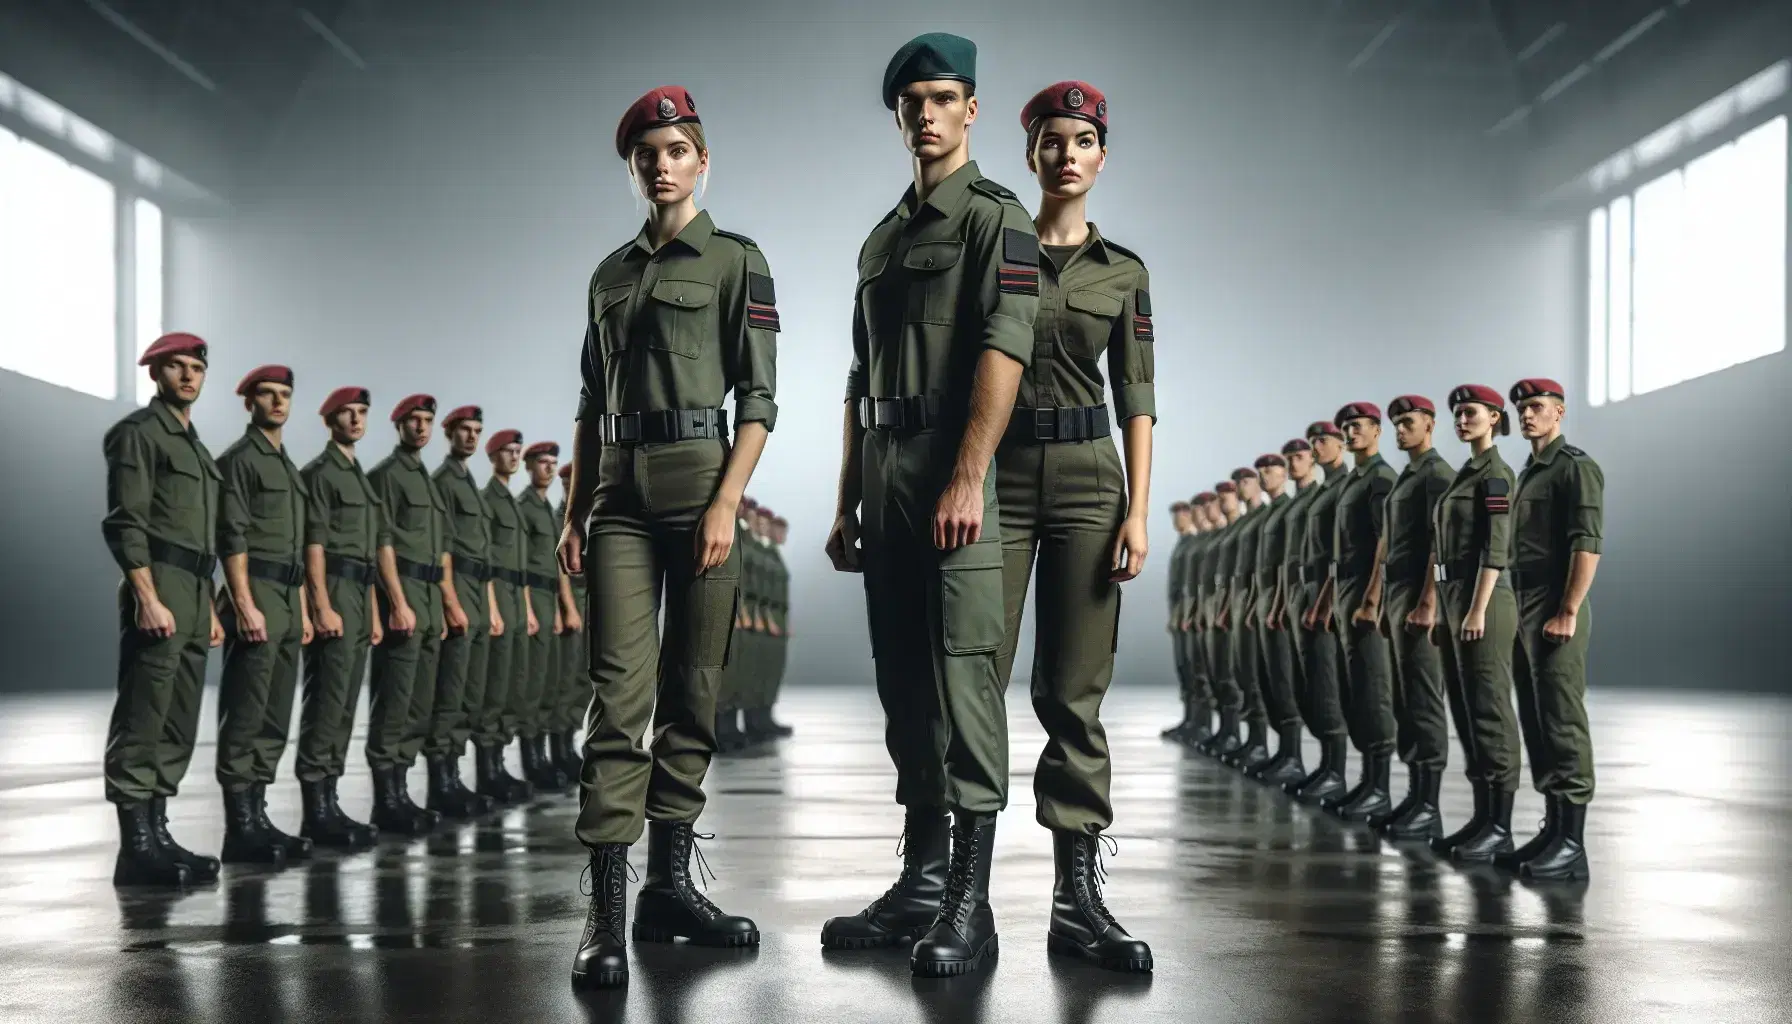 Grupo de soldados uniformados con boinas rojas y uniforme verde oliva en formación, reflejando igualdad de género y disciplina militar.